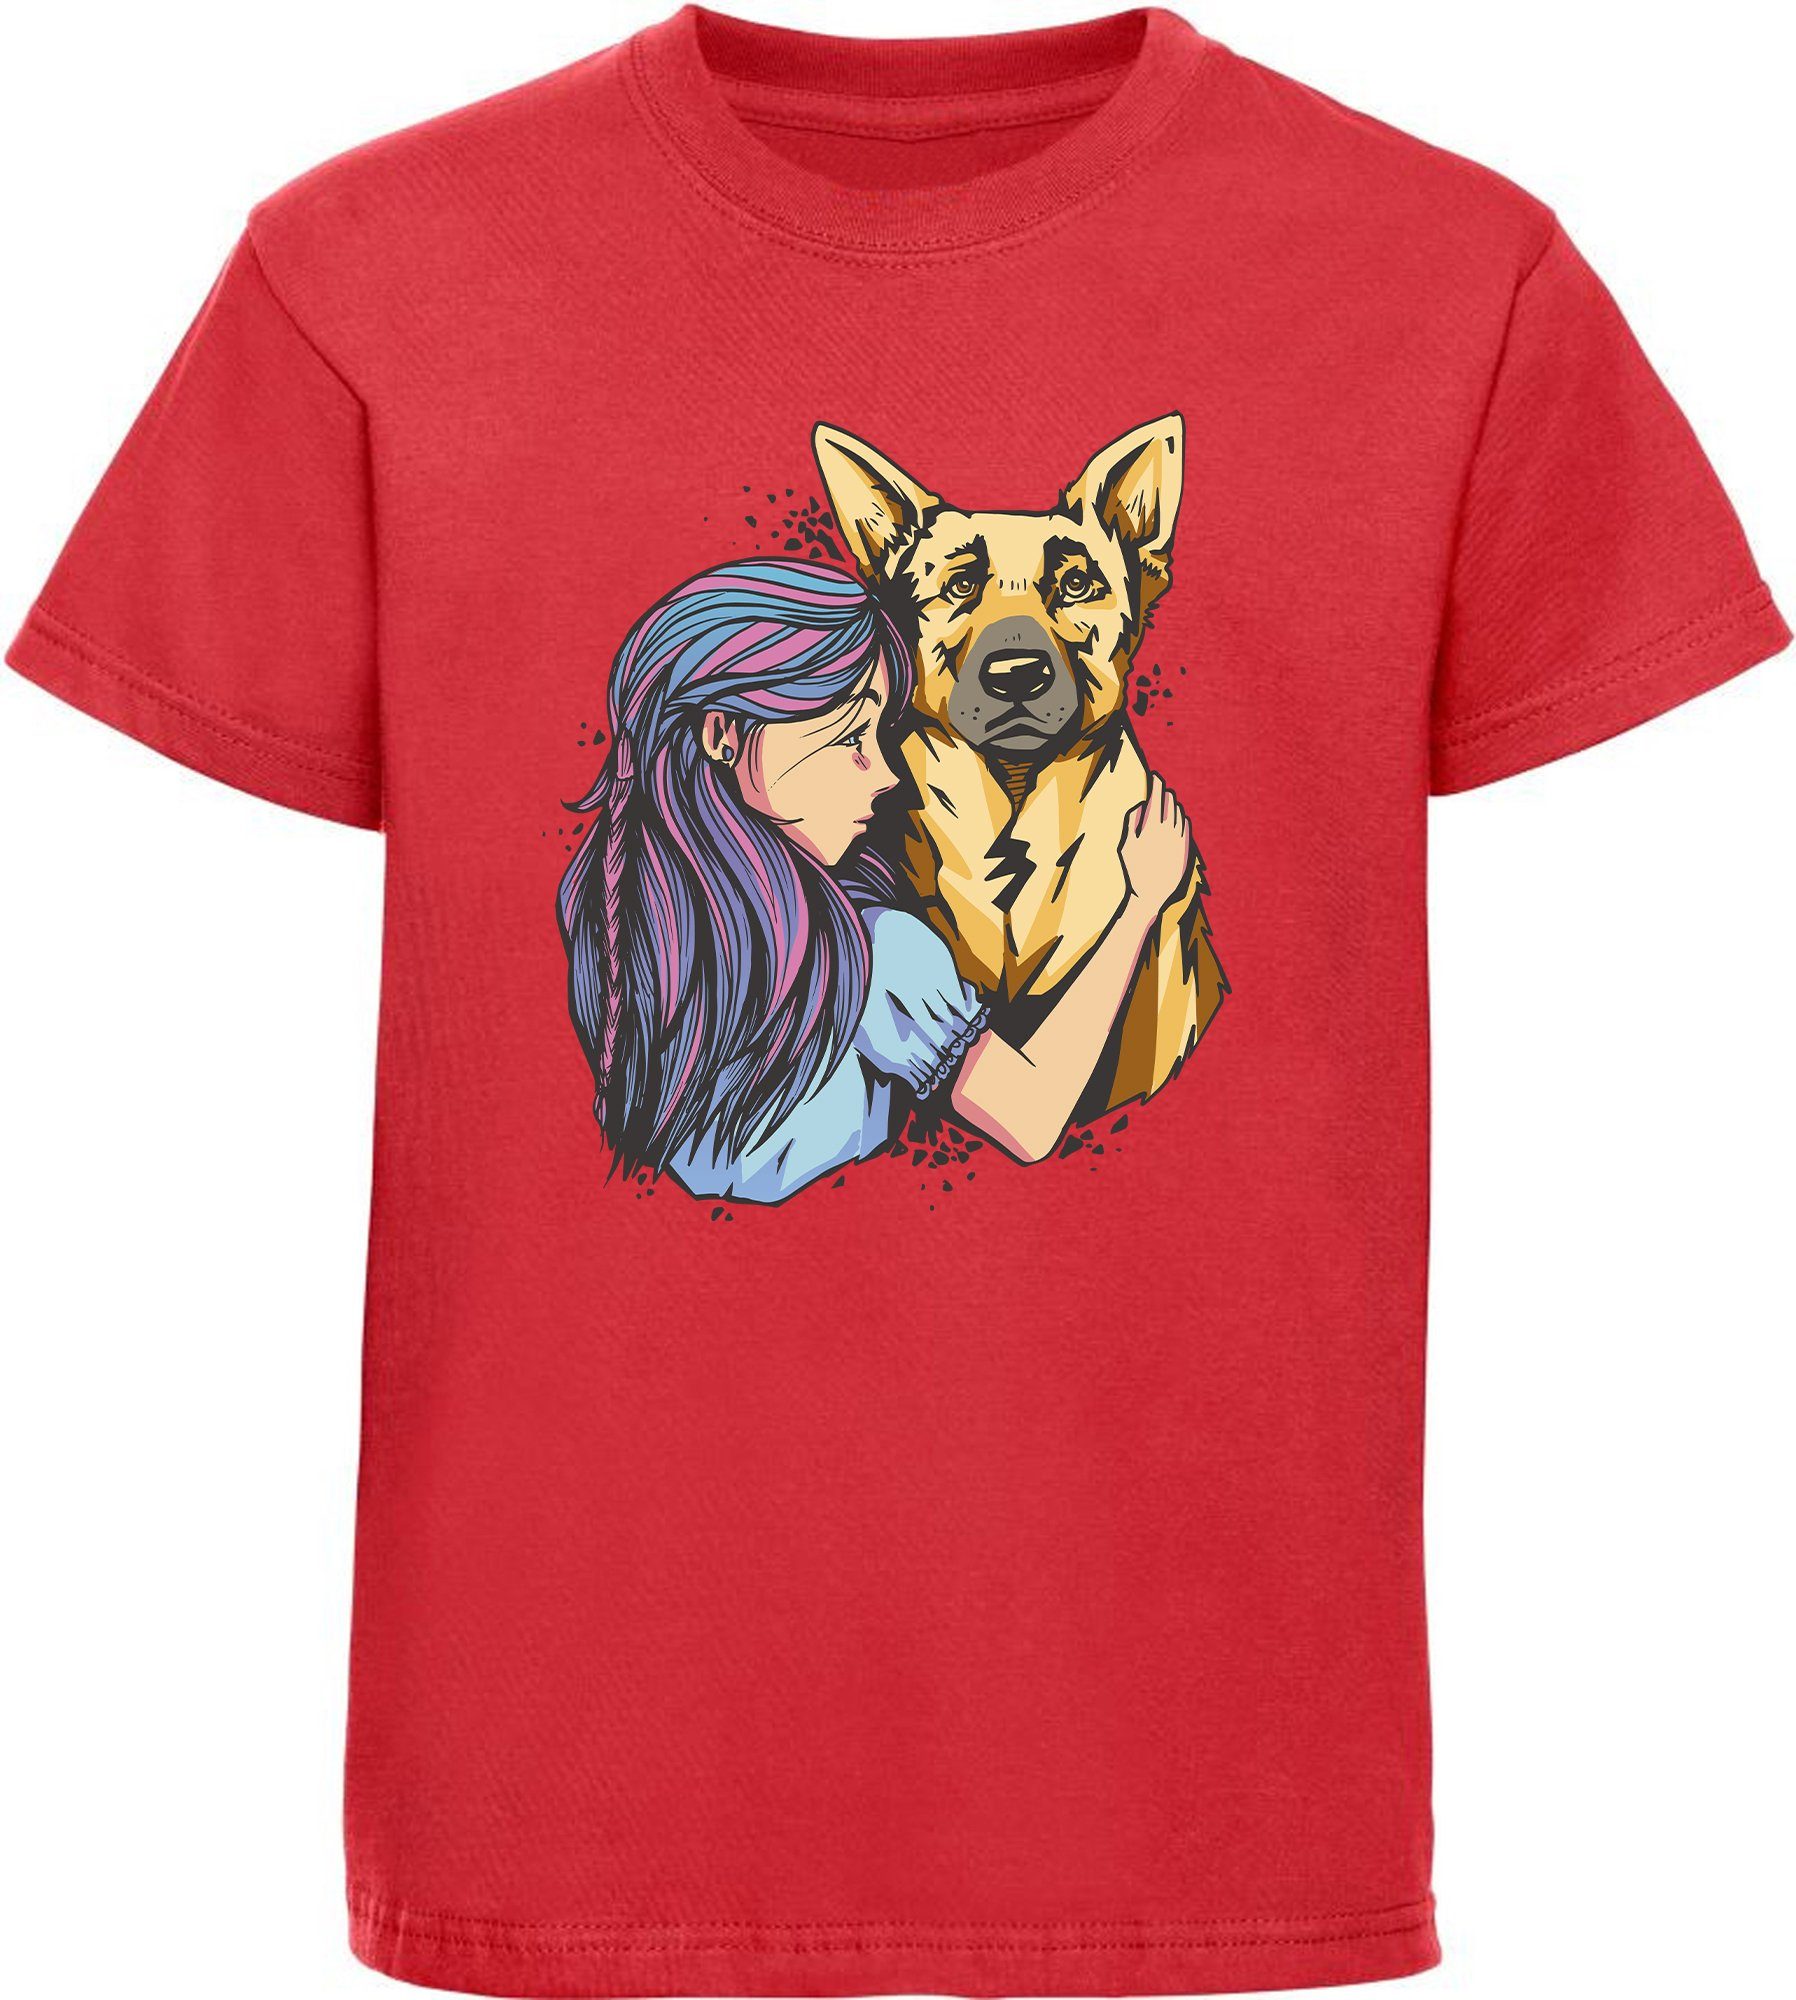 MyDesign24 T-Shirt Kinder Hunde Print Shirt bedruckt - Schäferhund mit Mädchen Baumwollshirt mit Aufdruck, i258 rot